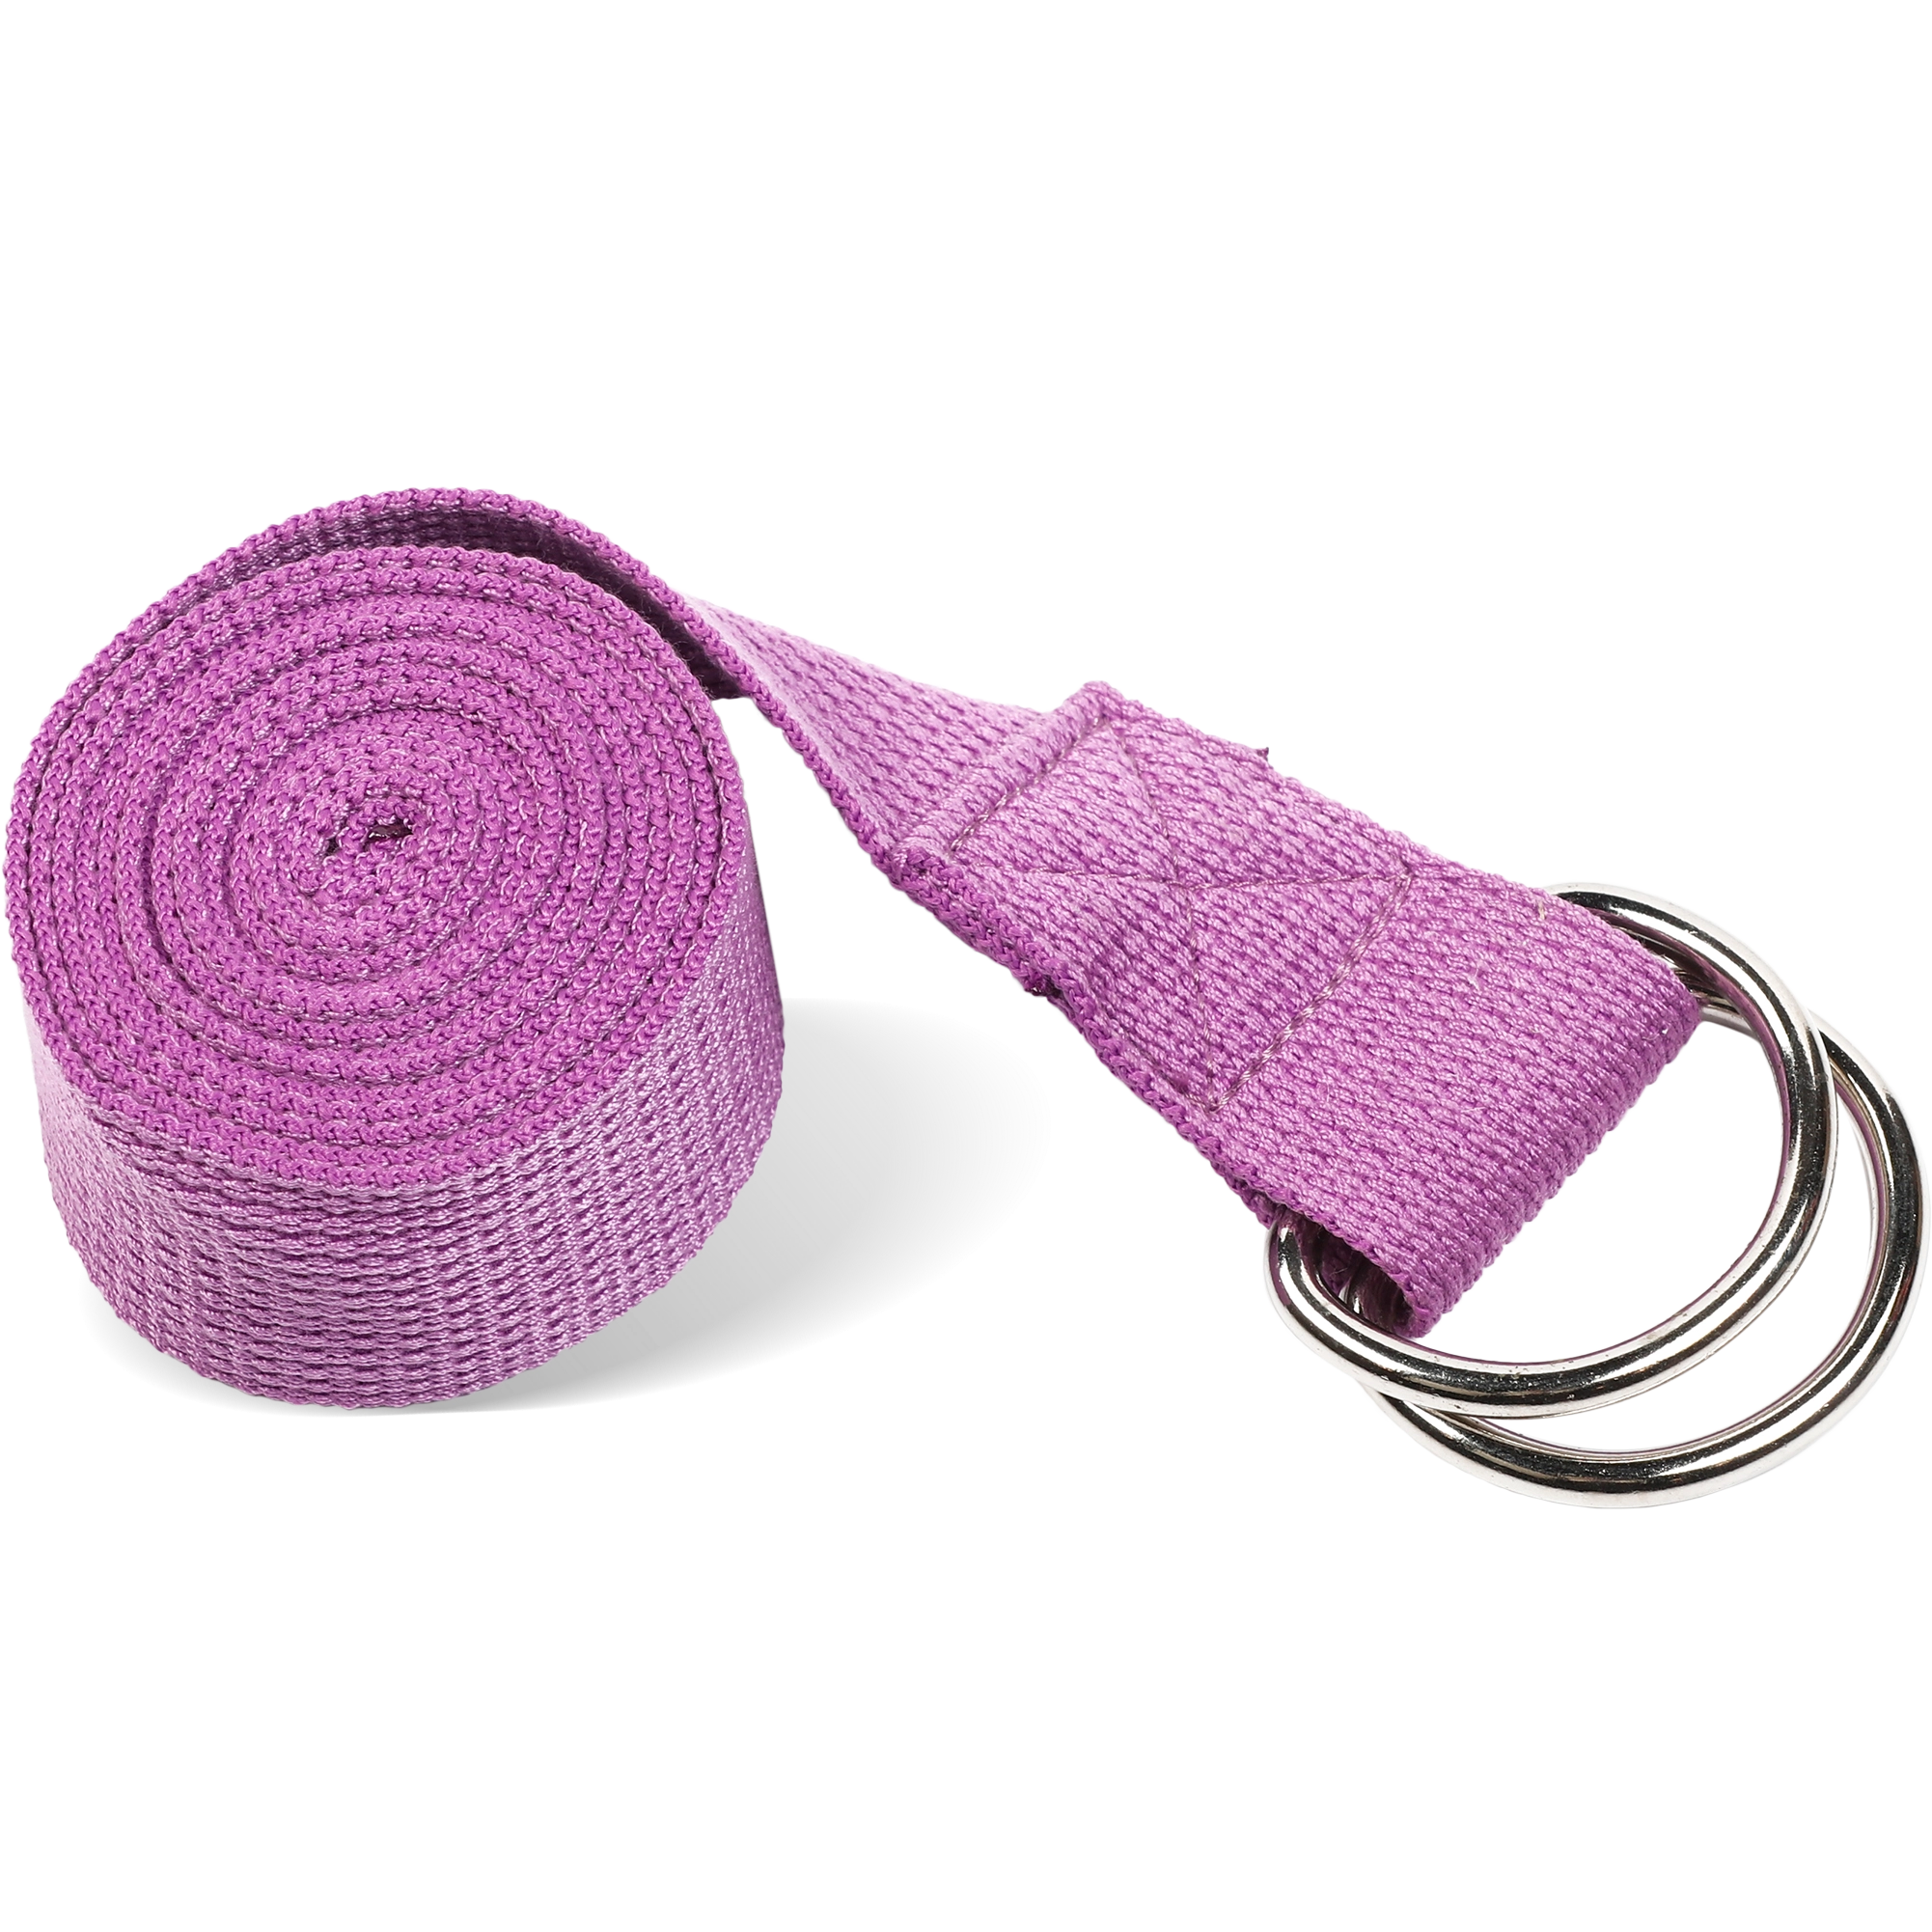 Ремень для йоги с металлическим карабином PRCTZ YOGA STRAP, фиолет. с гарантией